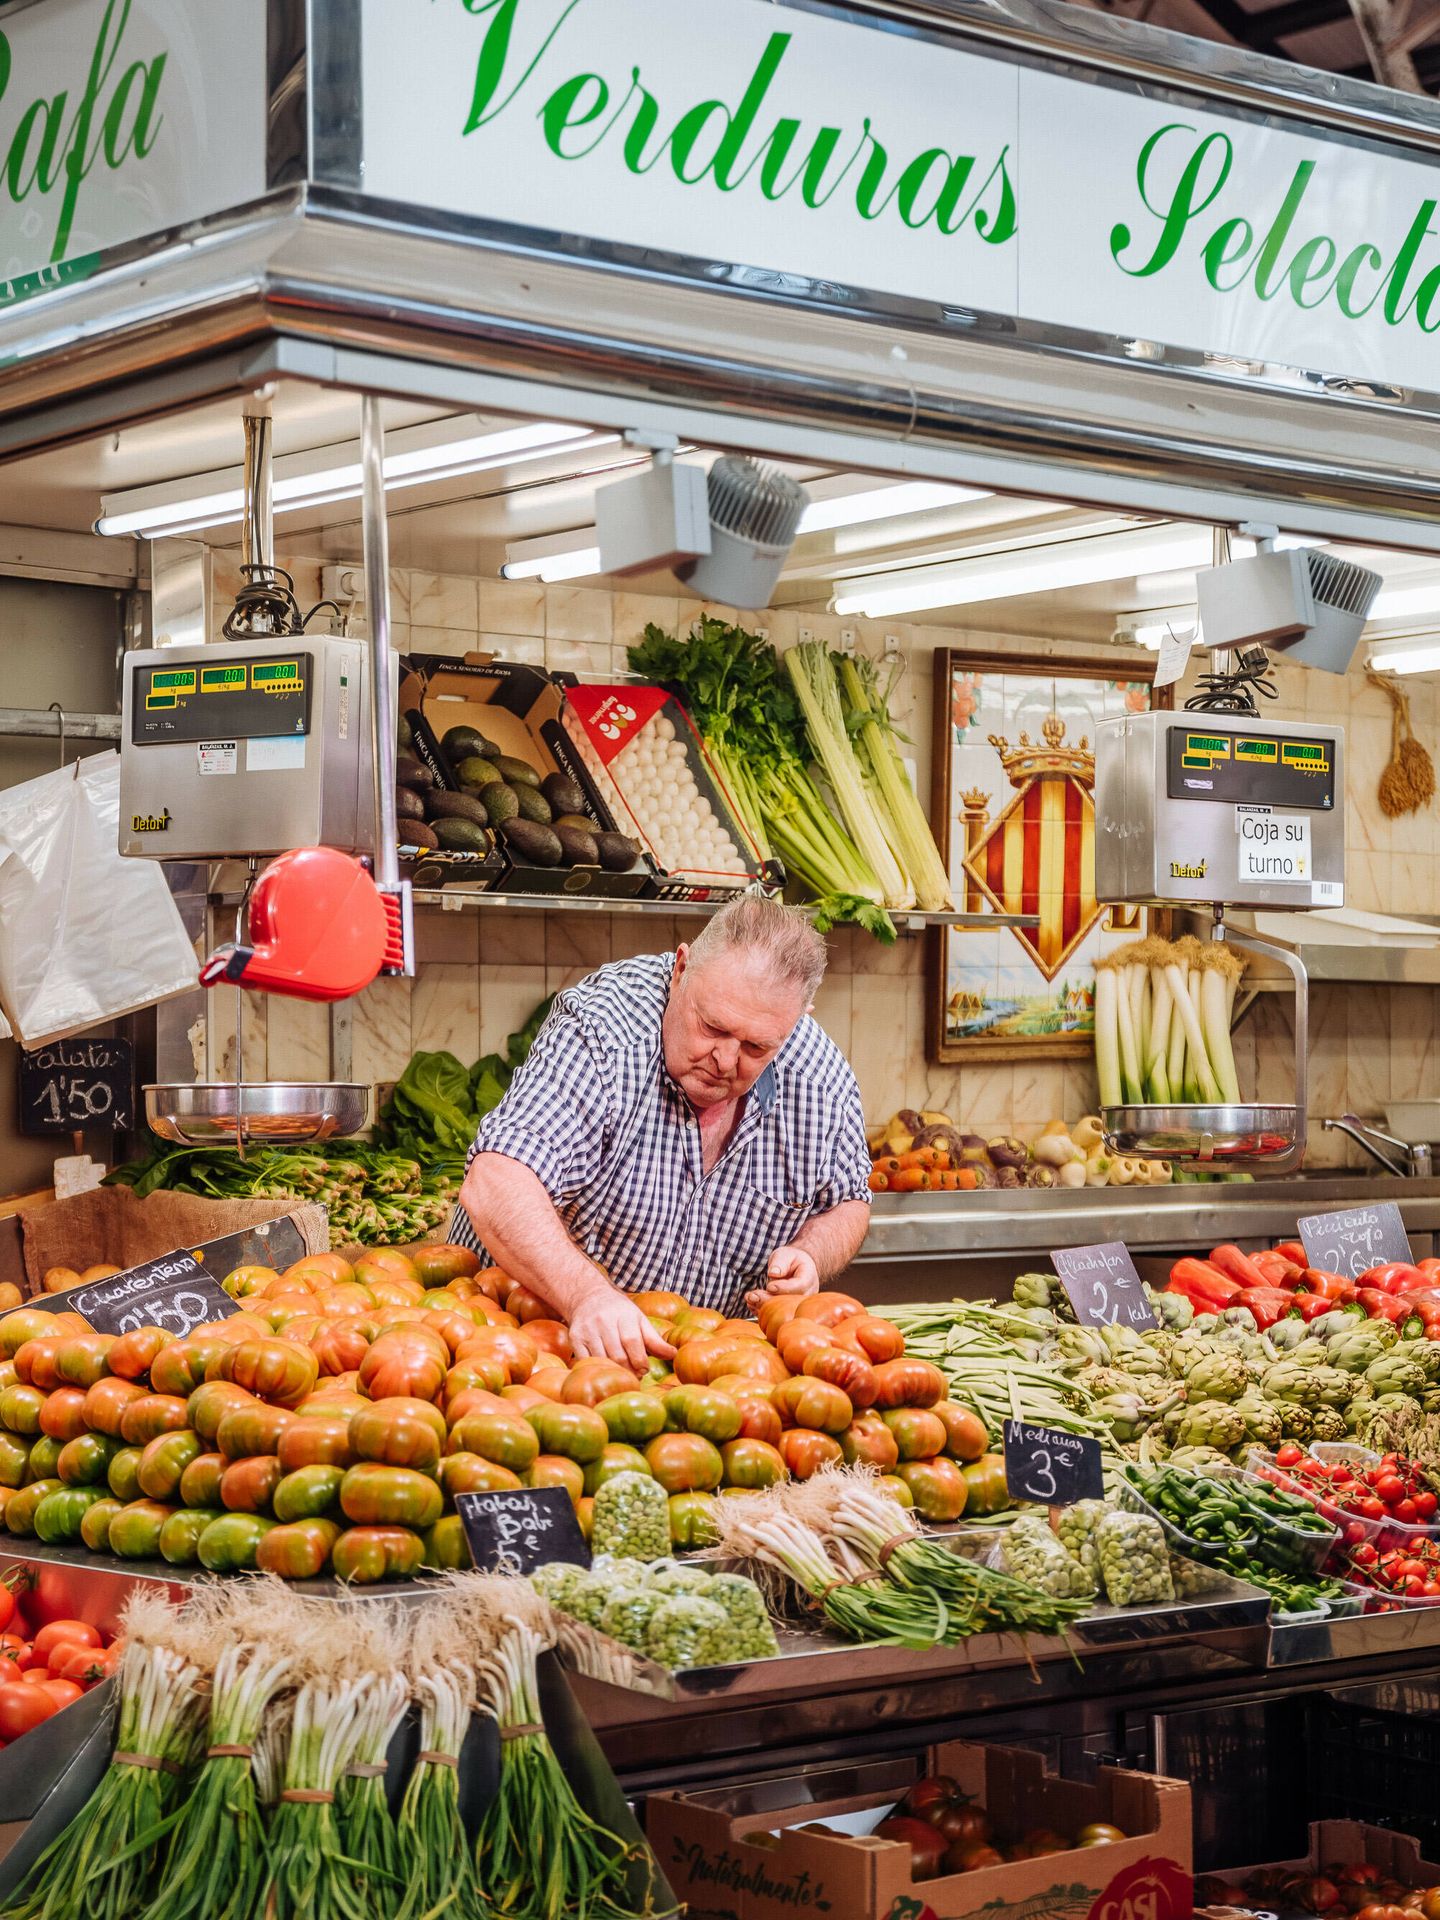 Un hombre en su puesto de verduras del Mercado. (Cedida)